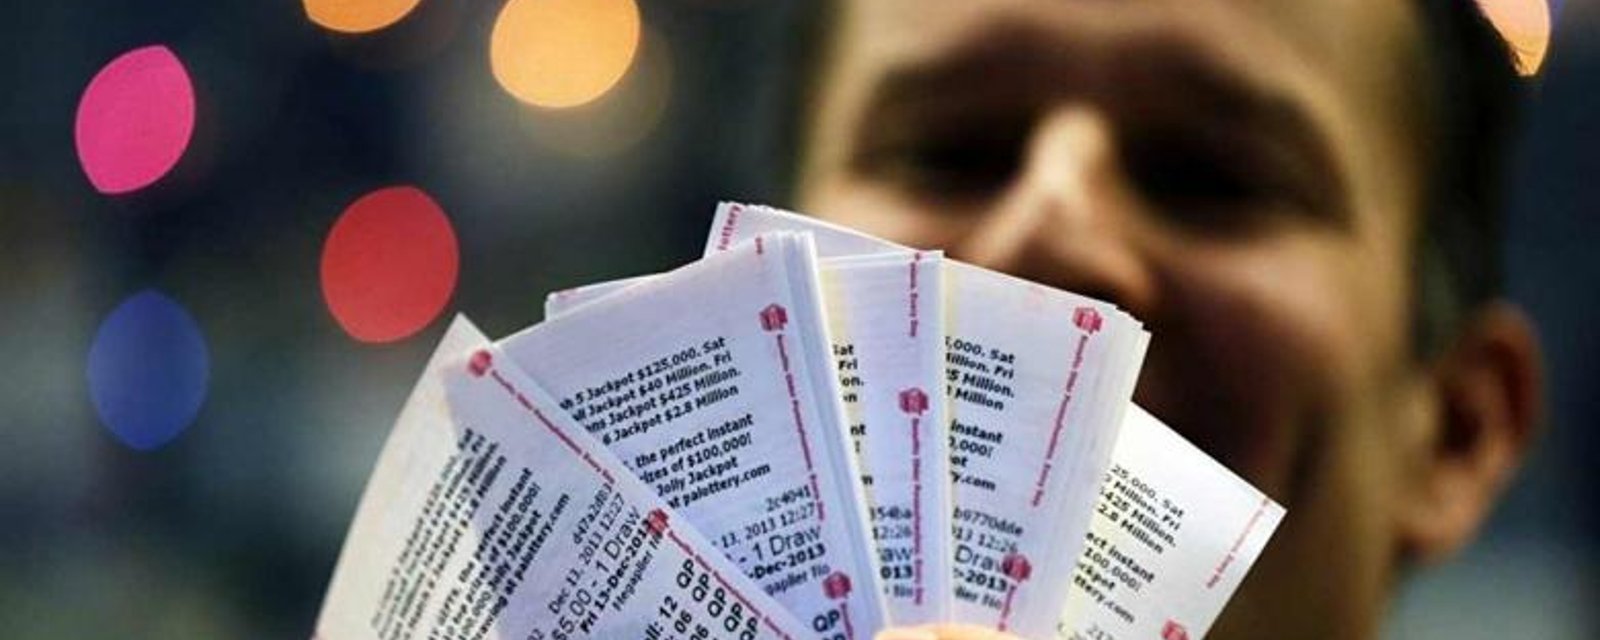 Un réfugié syrien gagne un gigantesque gros lot à la loterie!